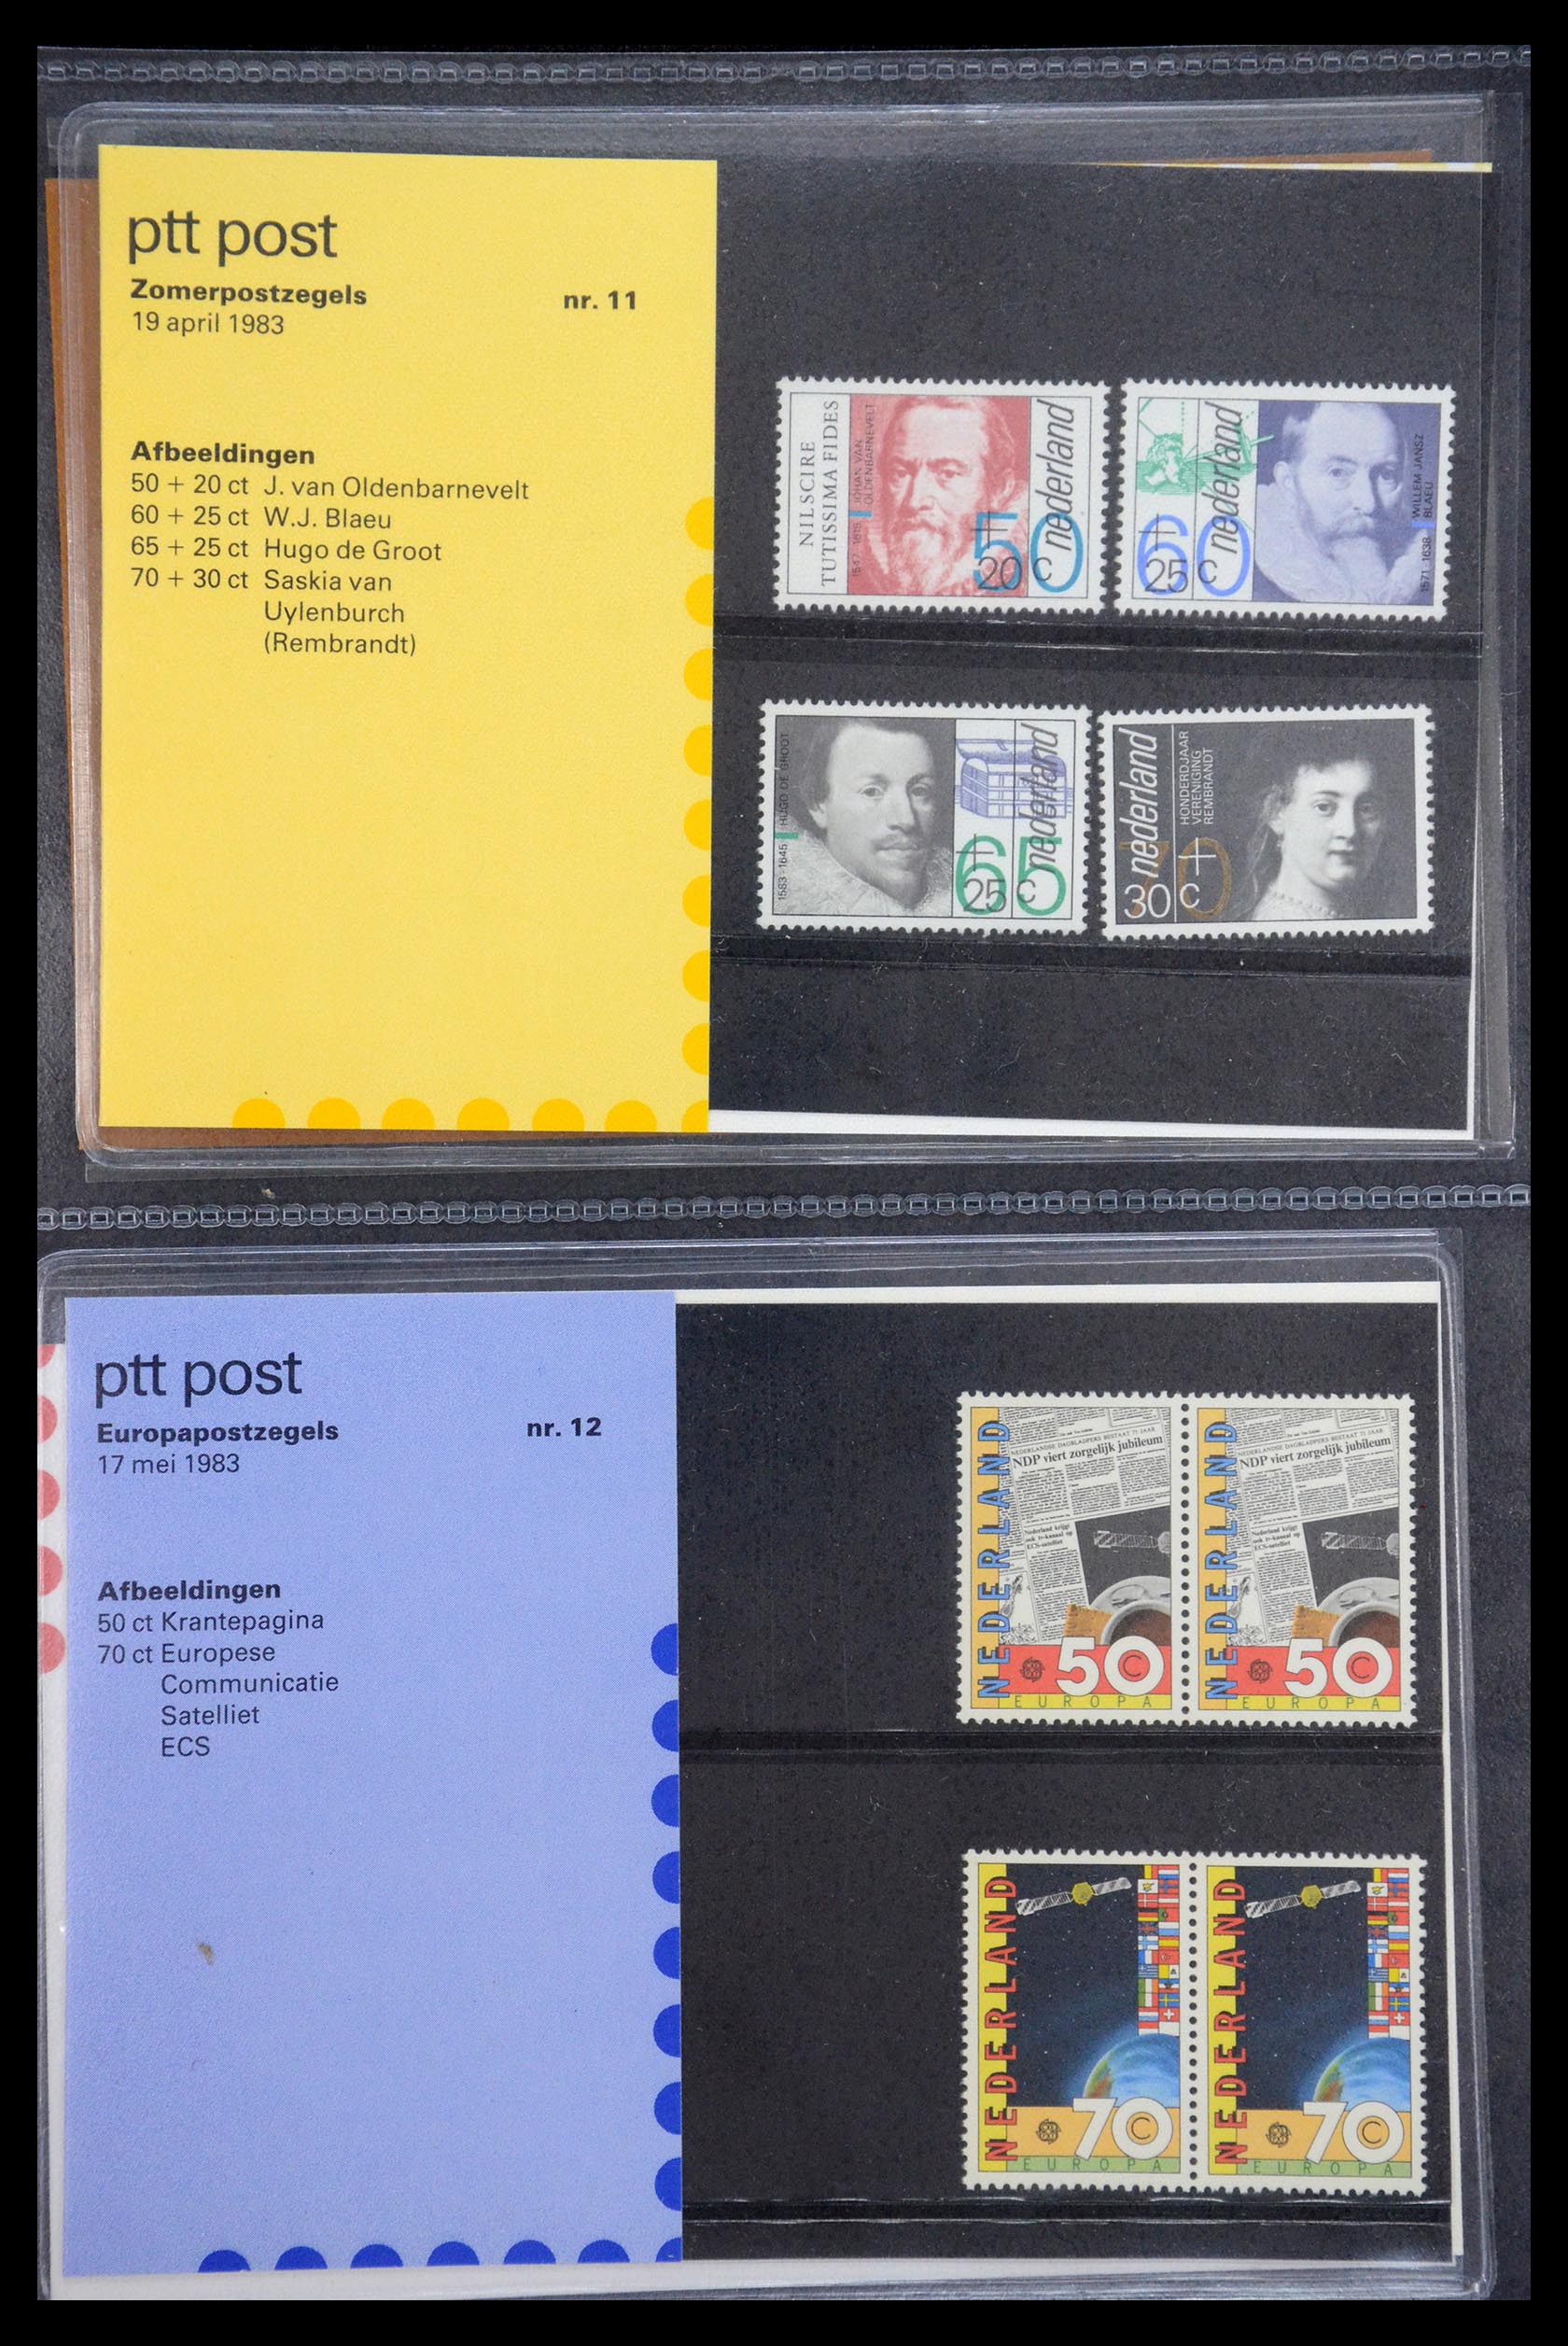 35187 006 - Stamp Collection 35187 Netherlands PTT presentation packs 1982-2019!